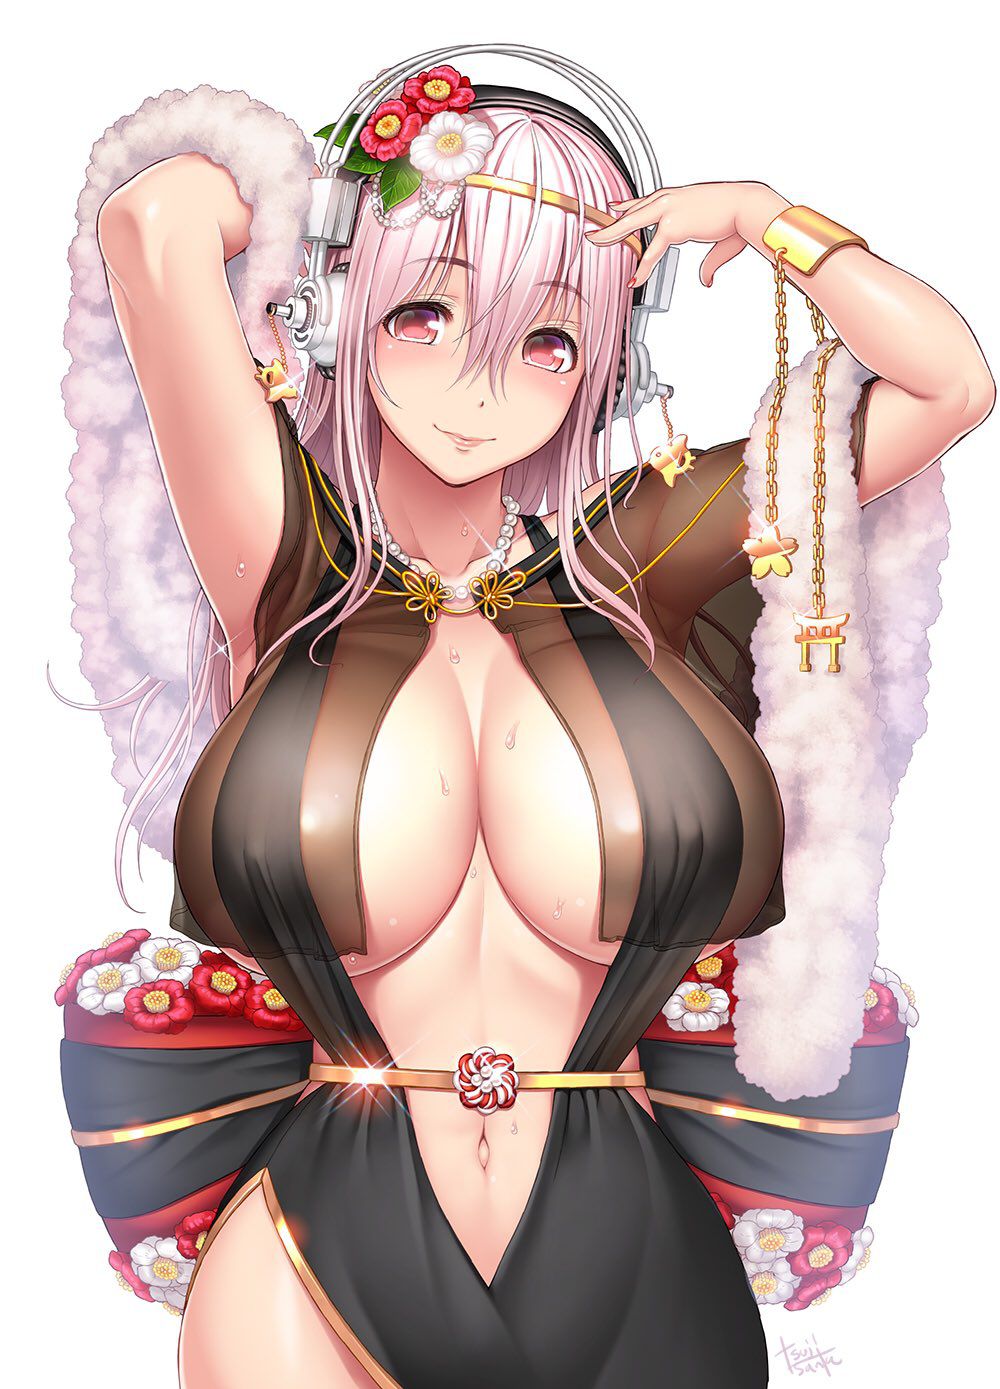 【2nd】 Erotic image of a girl with yoko milk puni puni part 47 35